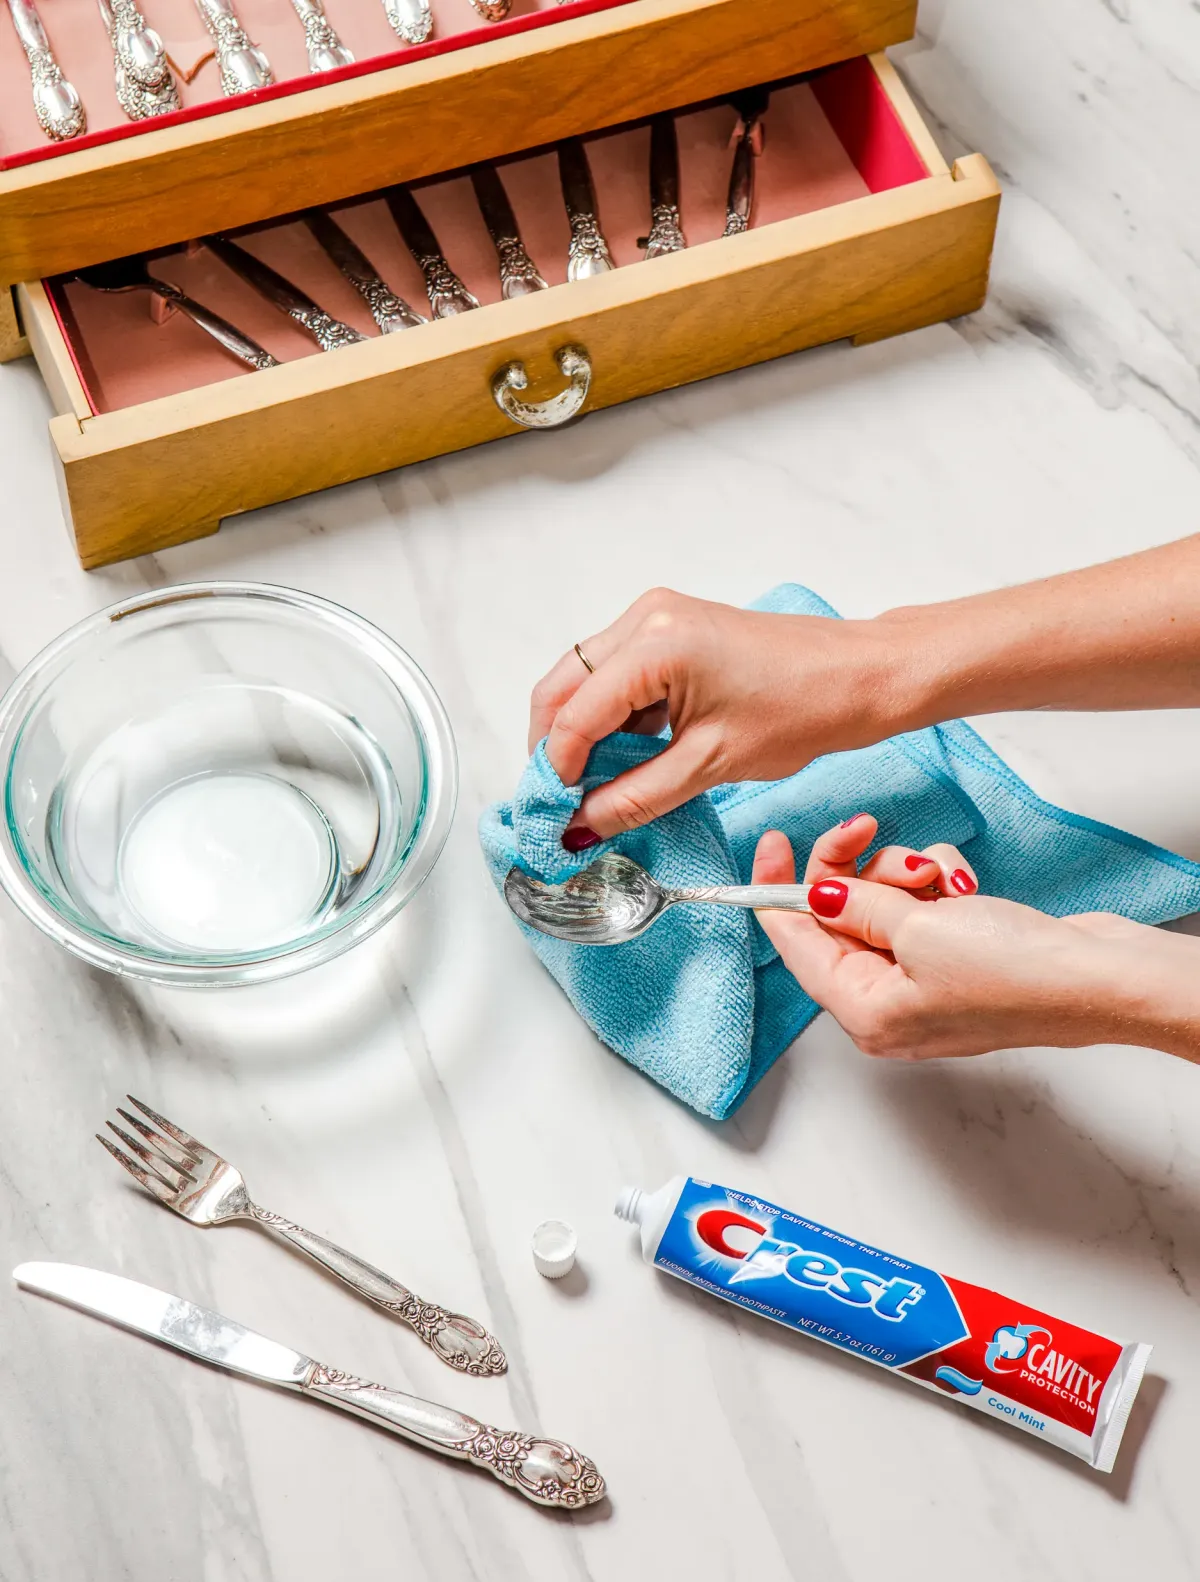 silberbesteck reinigen mit zahnpasta oder zahnpulver